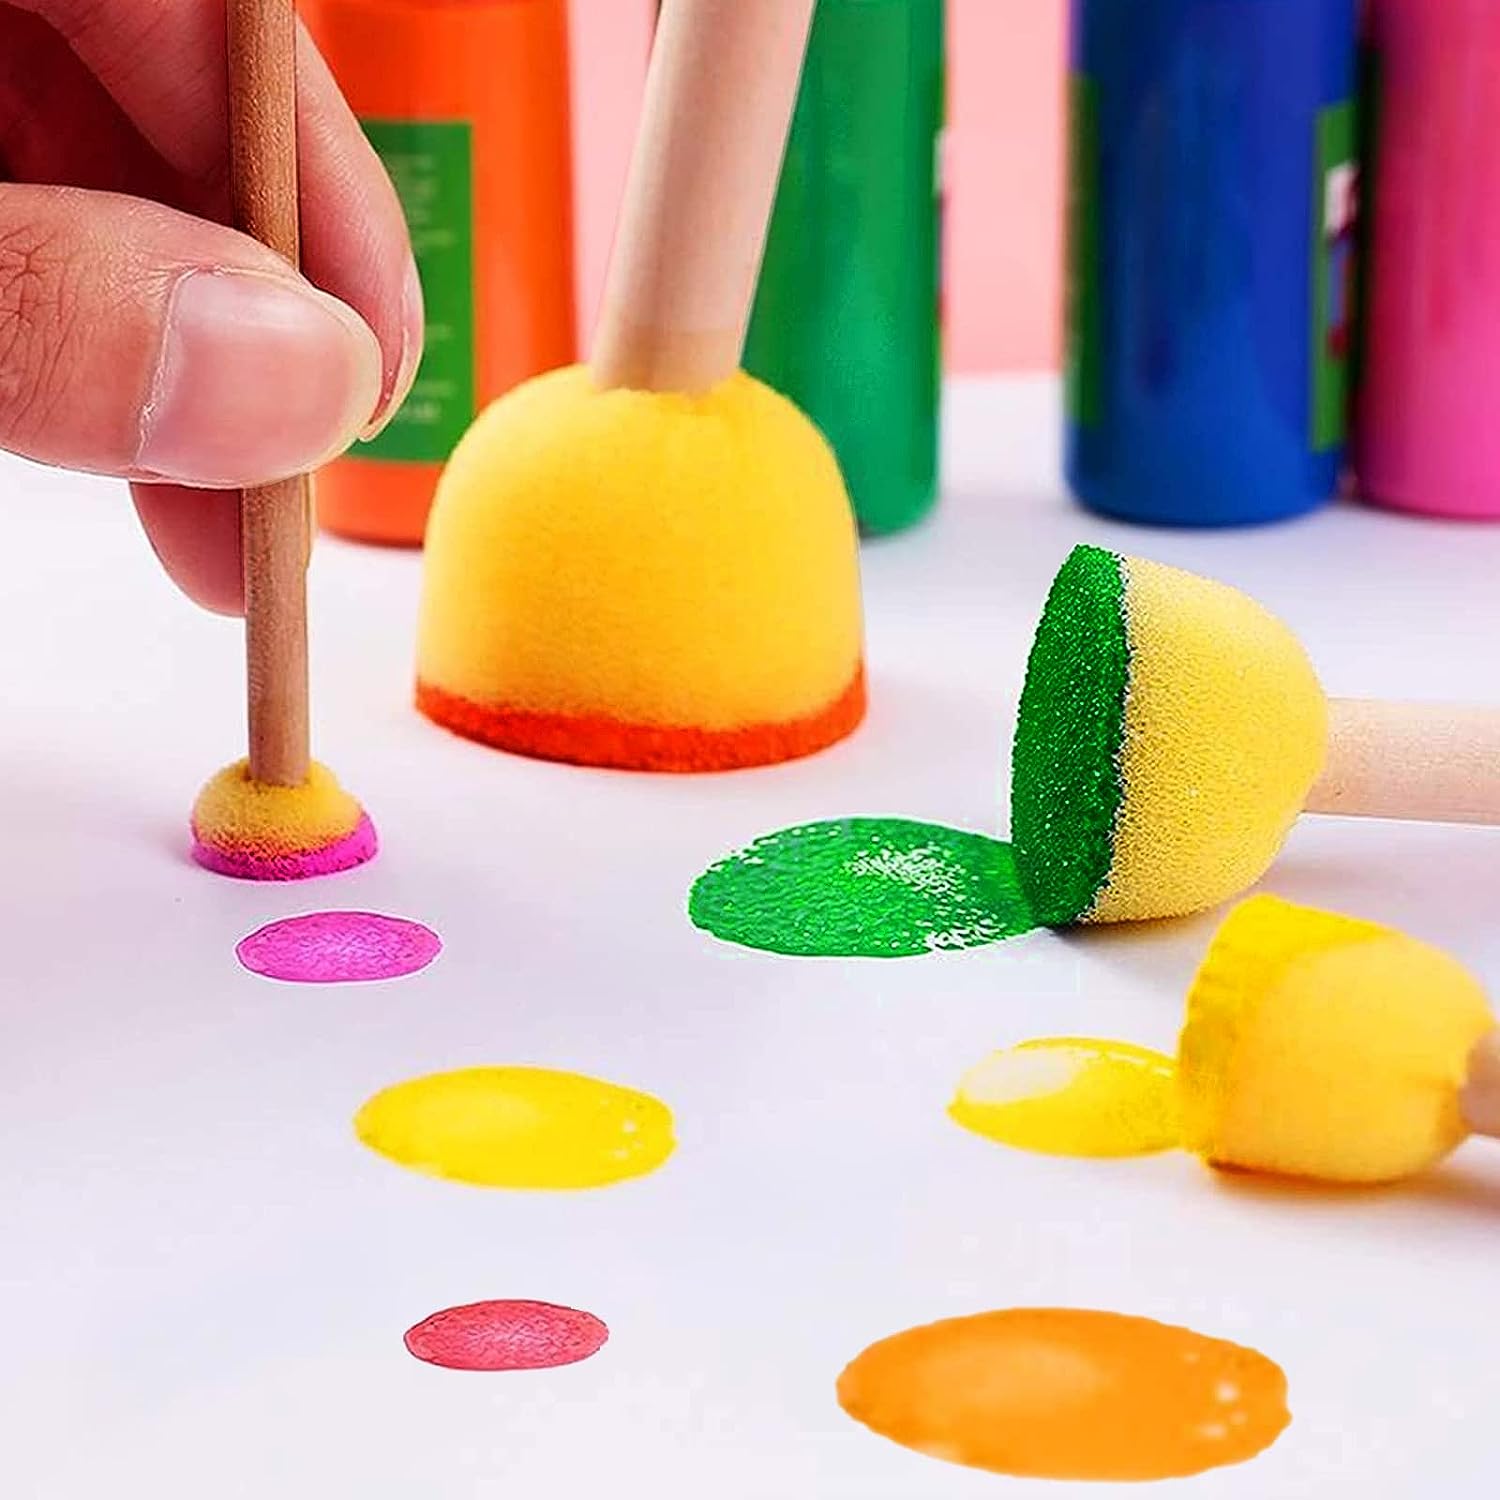 vivinin 30 Pcs Round Sponges Brush Set, Round Sponge Brushes for Painting, Paint Sponges for Acrylic Painting, Painting Tools for Kids Arts and Crafts